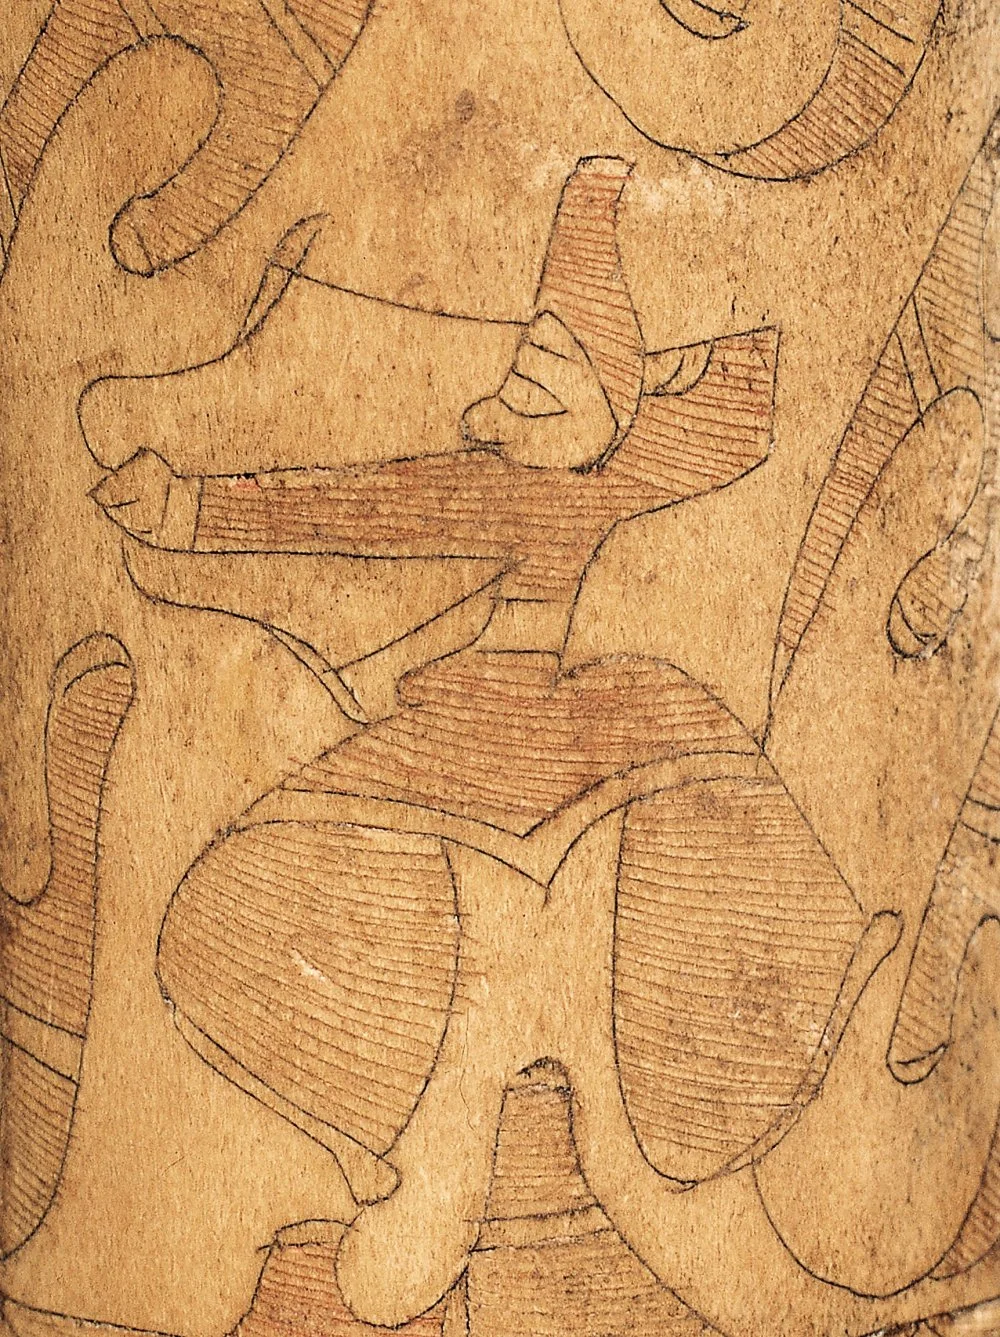 Аңшы, шамамен б.з.д. 500 ж./Gansu Museum/Wikimedia Commons